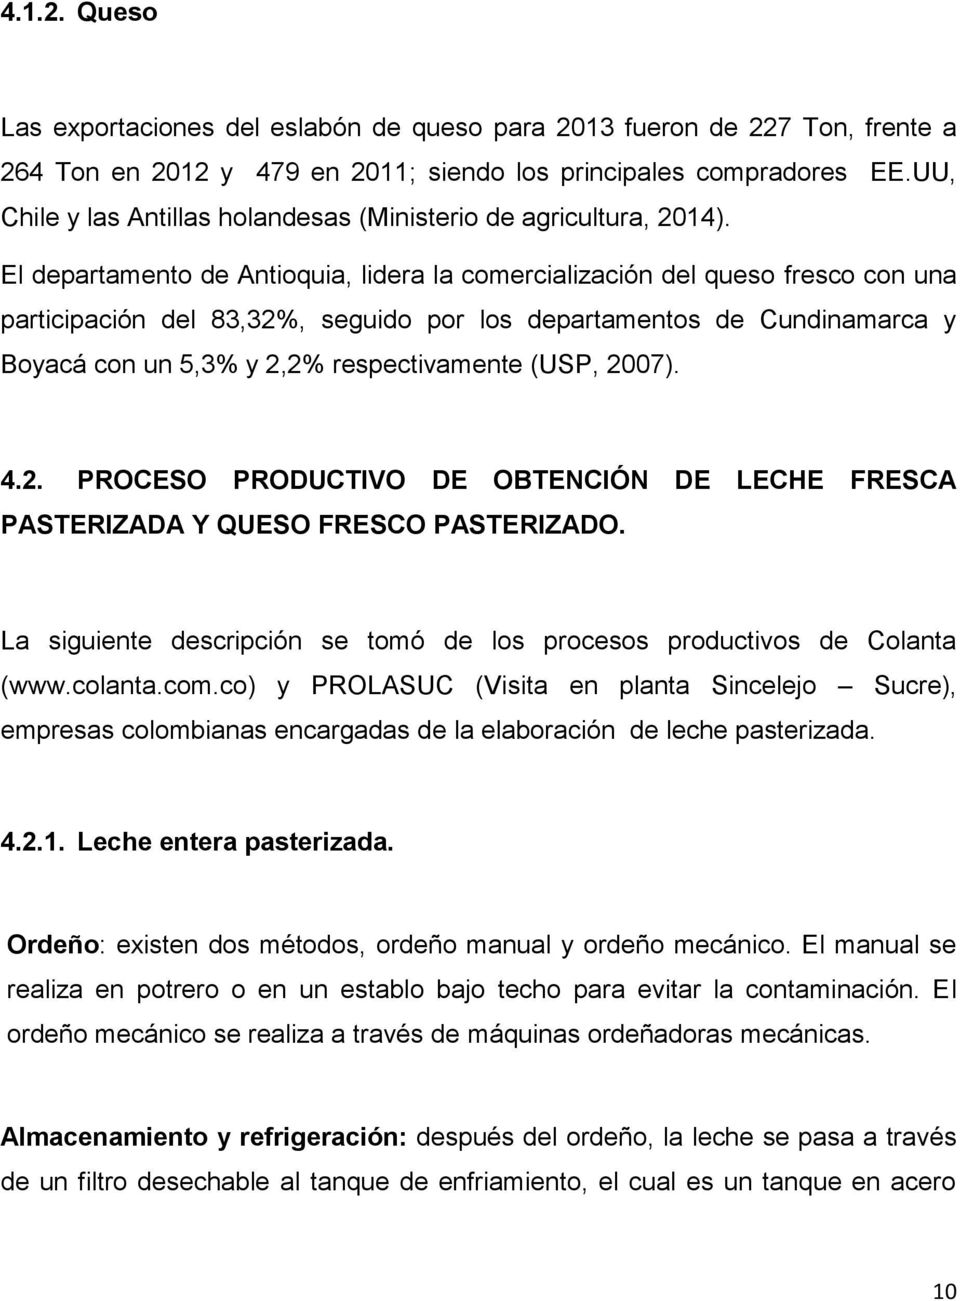 El departamento de Antioquia, lidera la comercialización del queso fresco con una participación del 83,32%, seguido por los departamentos de Cundinamarca y Boyacá con un 5,3% y 2,2% respectivamente